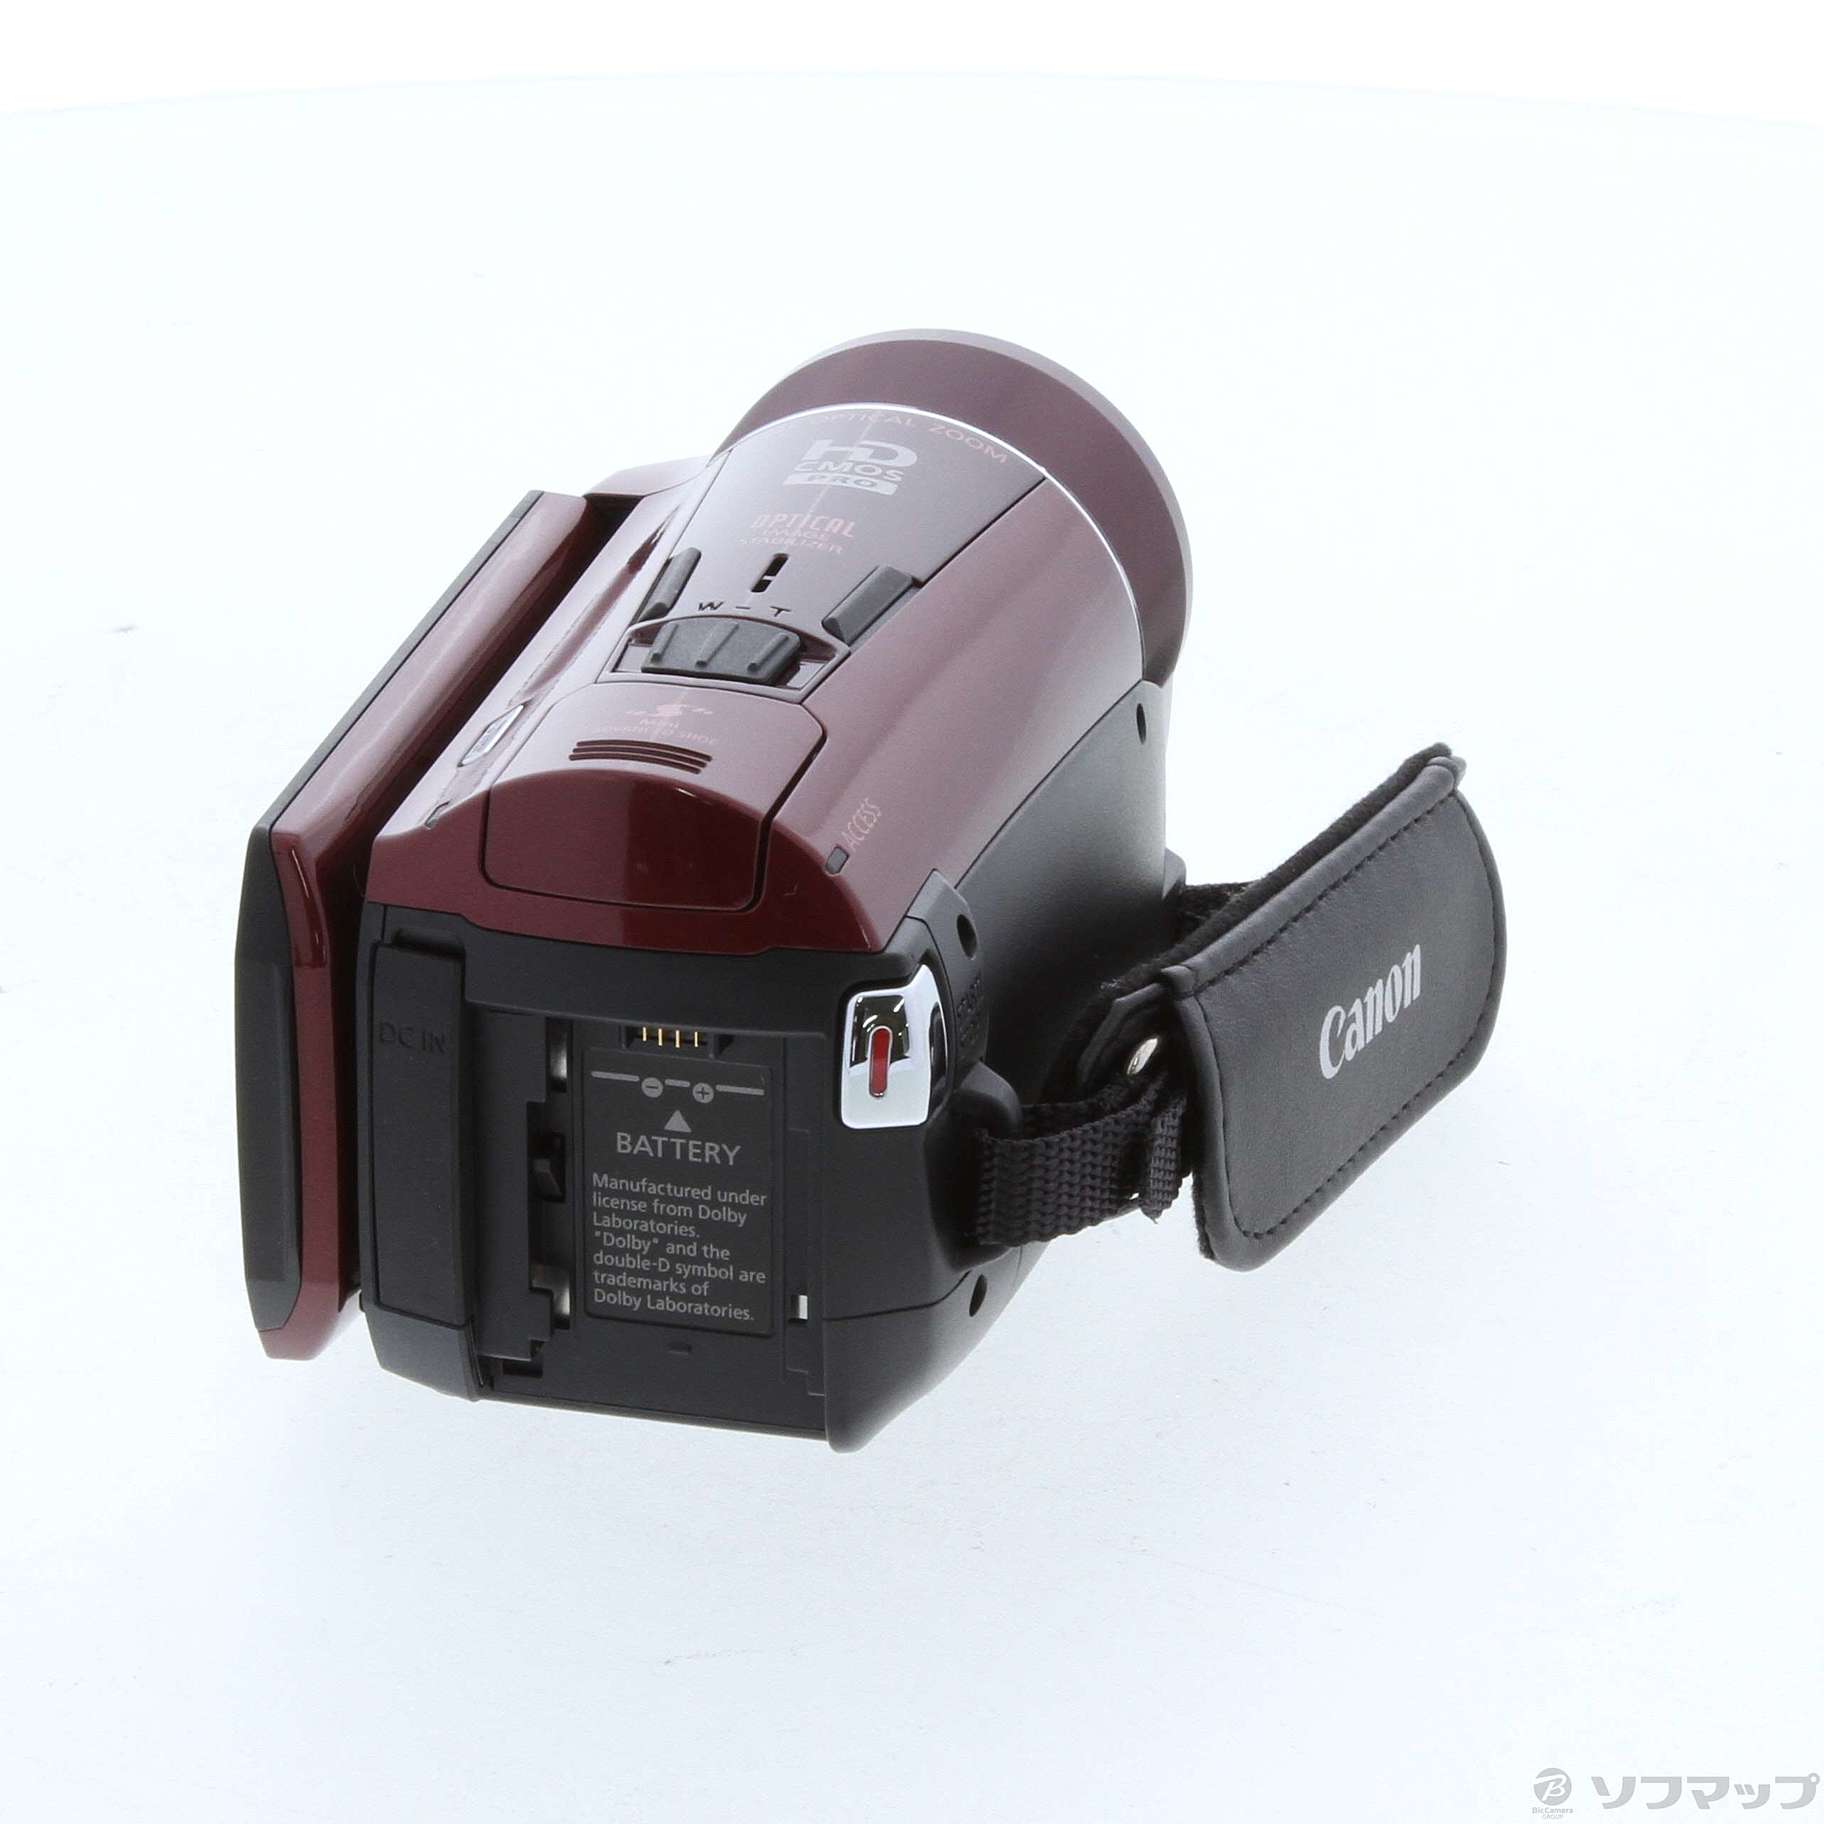 超美品の Canon ビデオカメラ デジタルビデオカメラ iVIS HF - M51 HF 